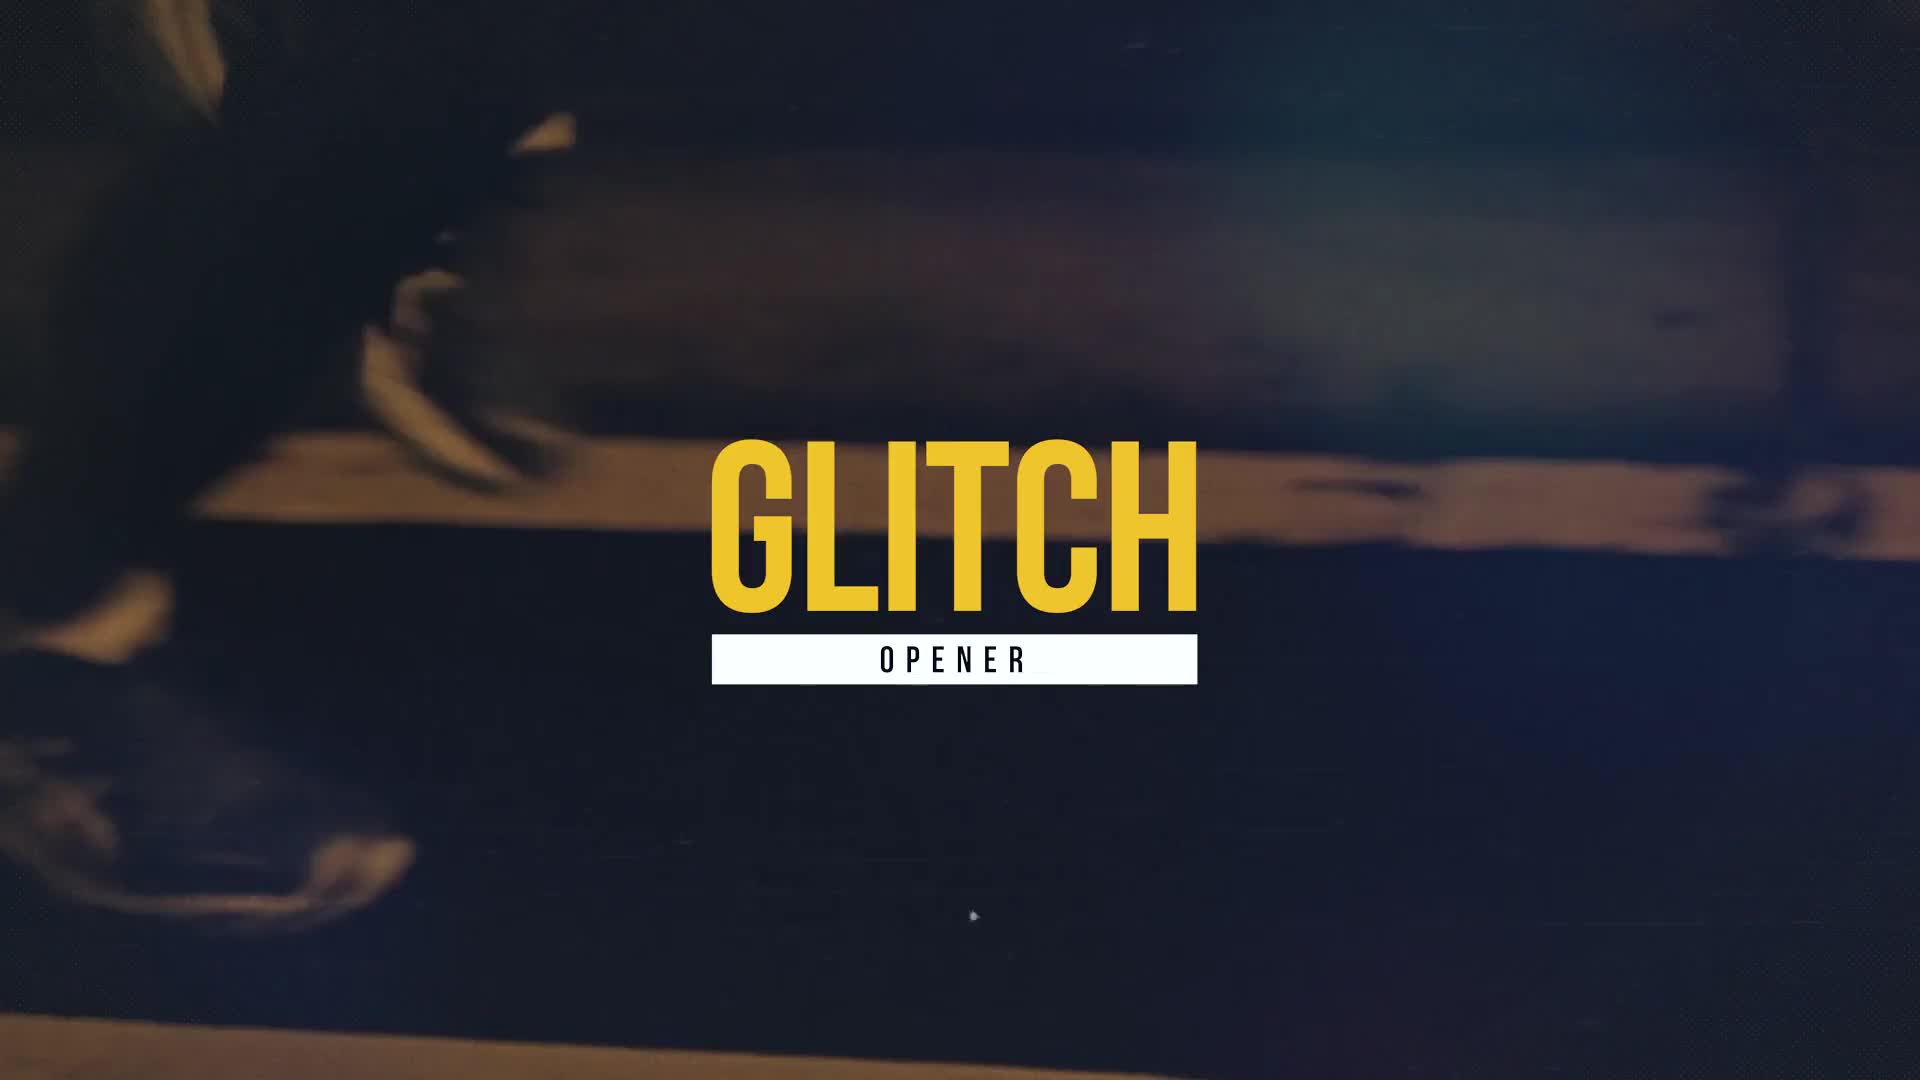 Action Glitch Opener Videohive 23259697 Premiere Pro Image 1